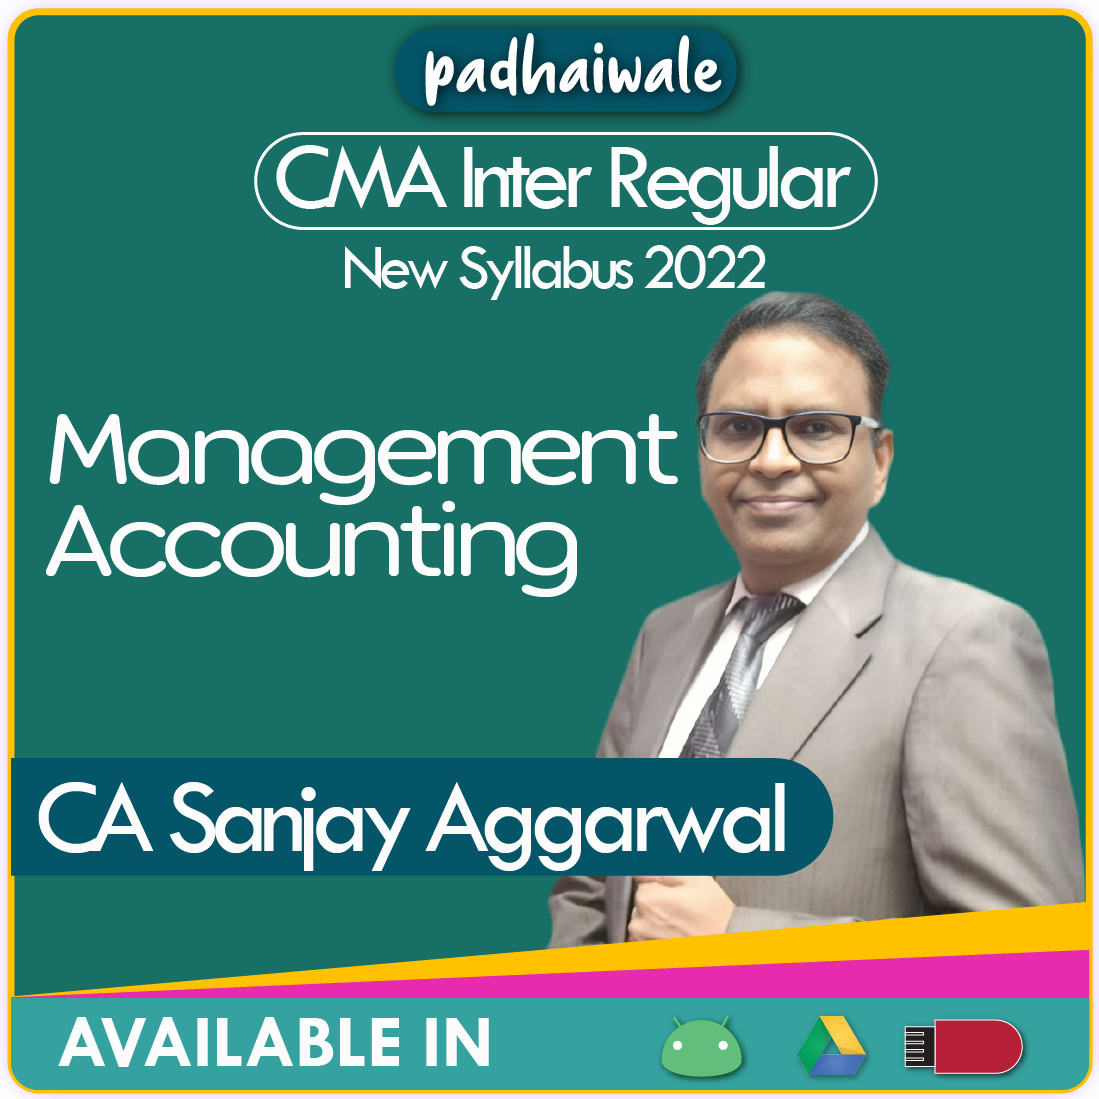 CMA Inter Management Accounting Sanjay Aggarwal